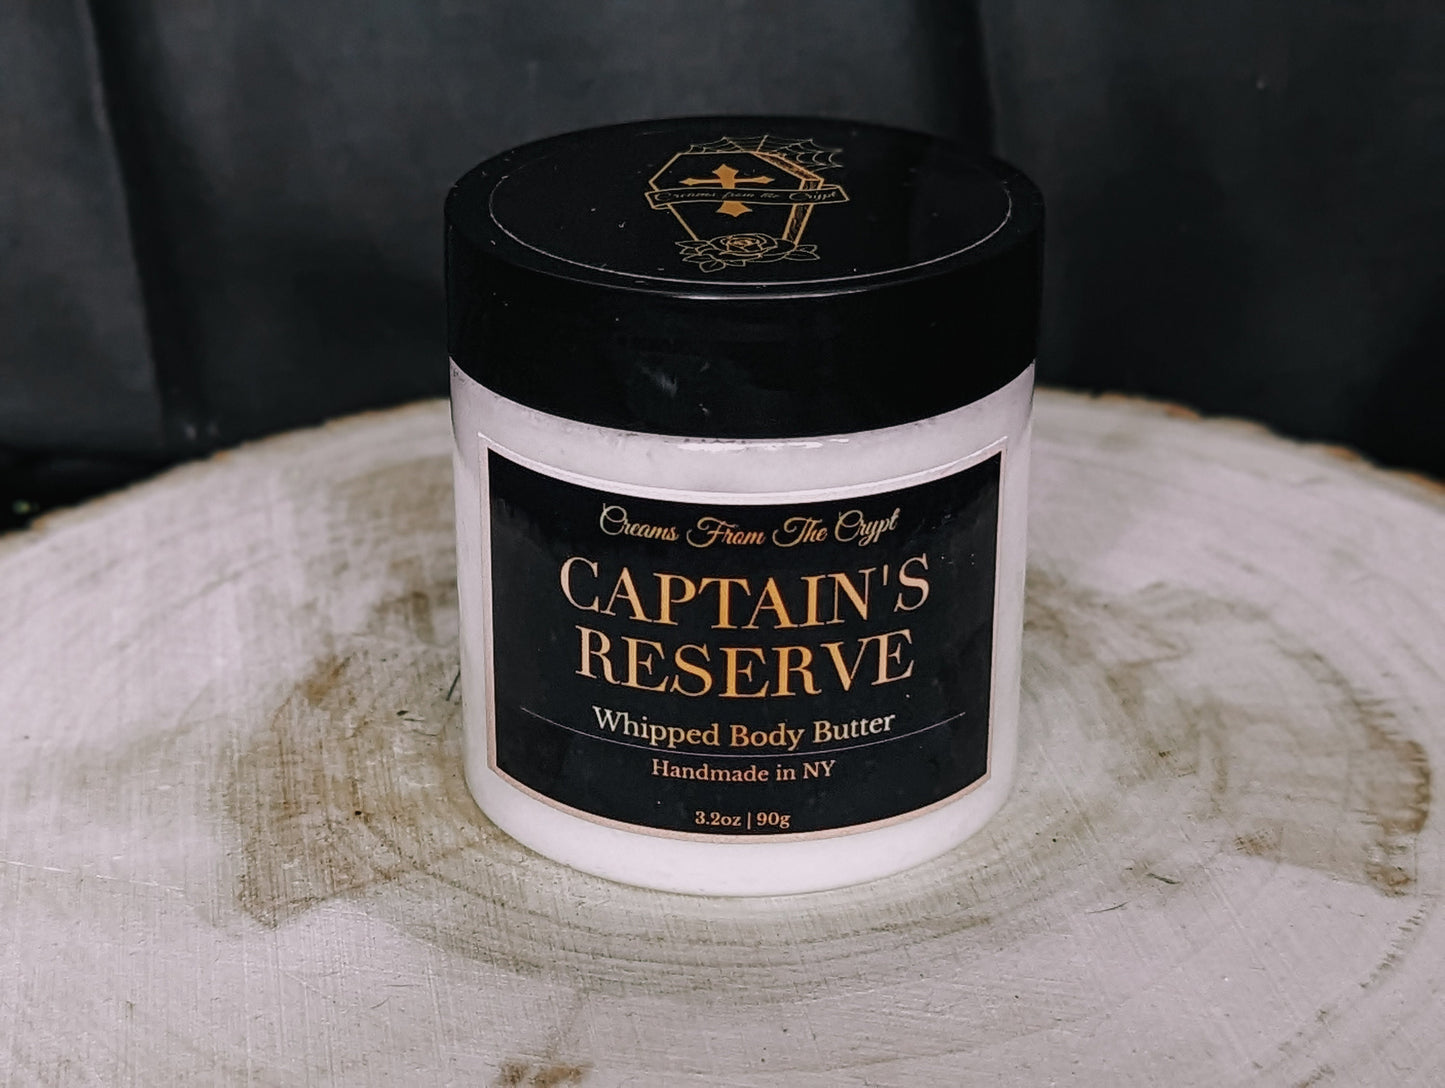 CAPTAIN'S RESERVE - Tropical rum scented vegan whipped body butter, Shea, mango butter, moisturizer, unisex skincare, summer fragrance, gift